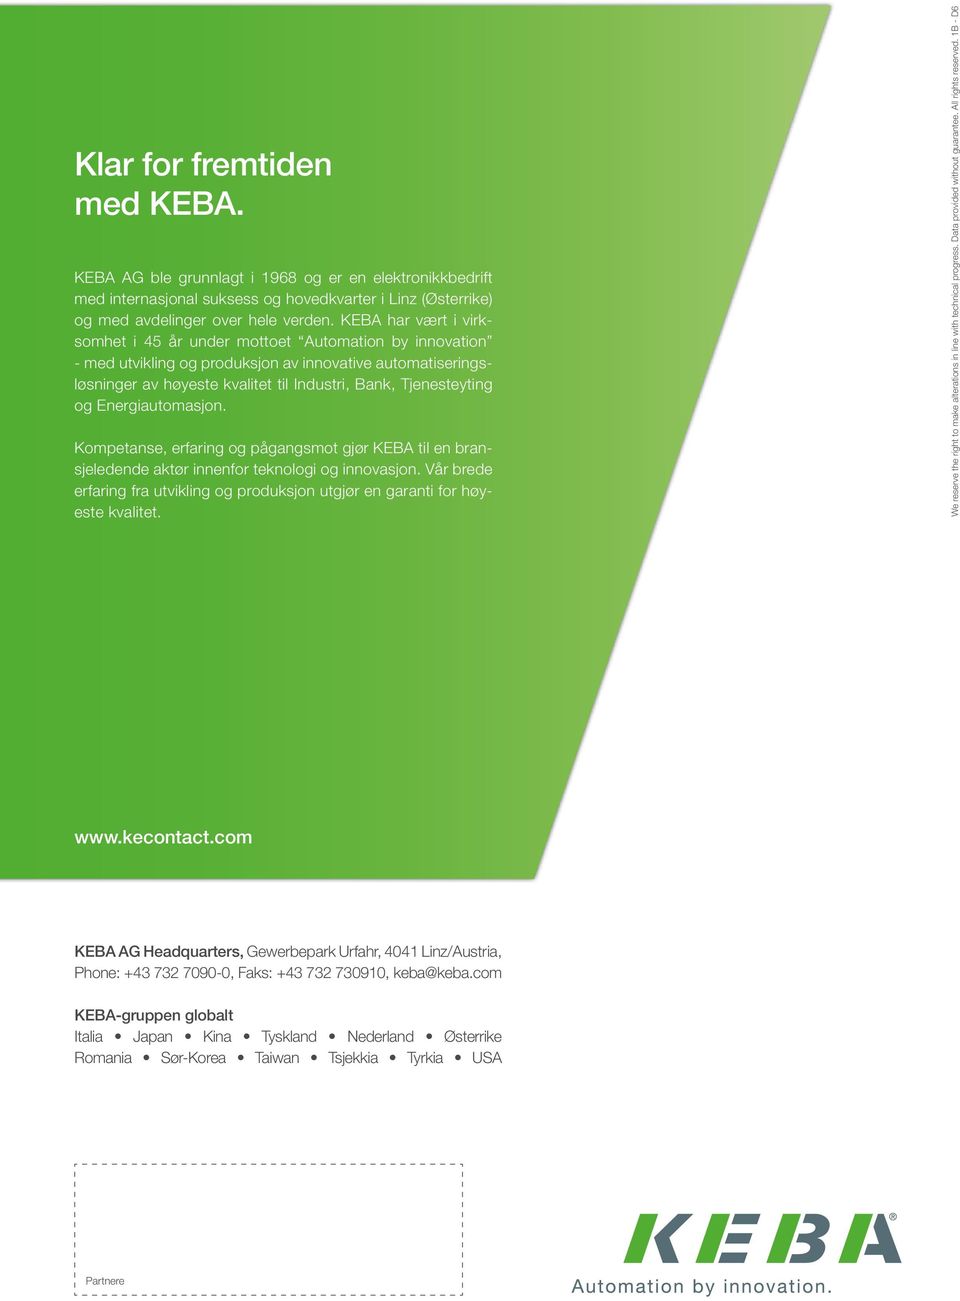 Energiautomasjon. Kompetanse, erfaring og pågangsmot gjør KEBA til en bransjeledende aktør innenfor teknologi og innovasjon.